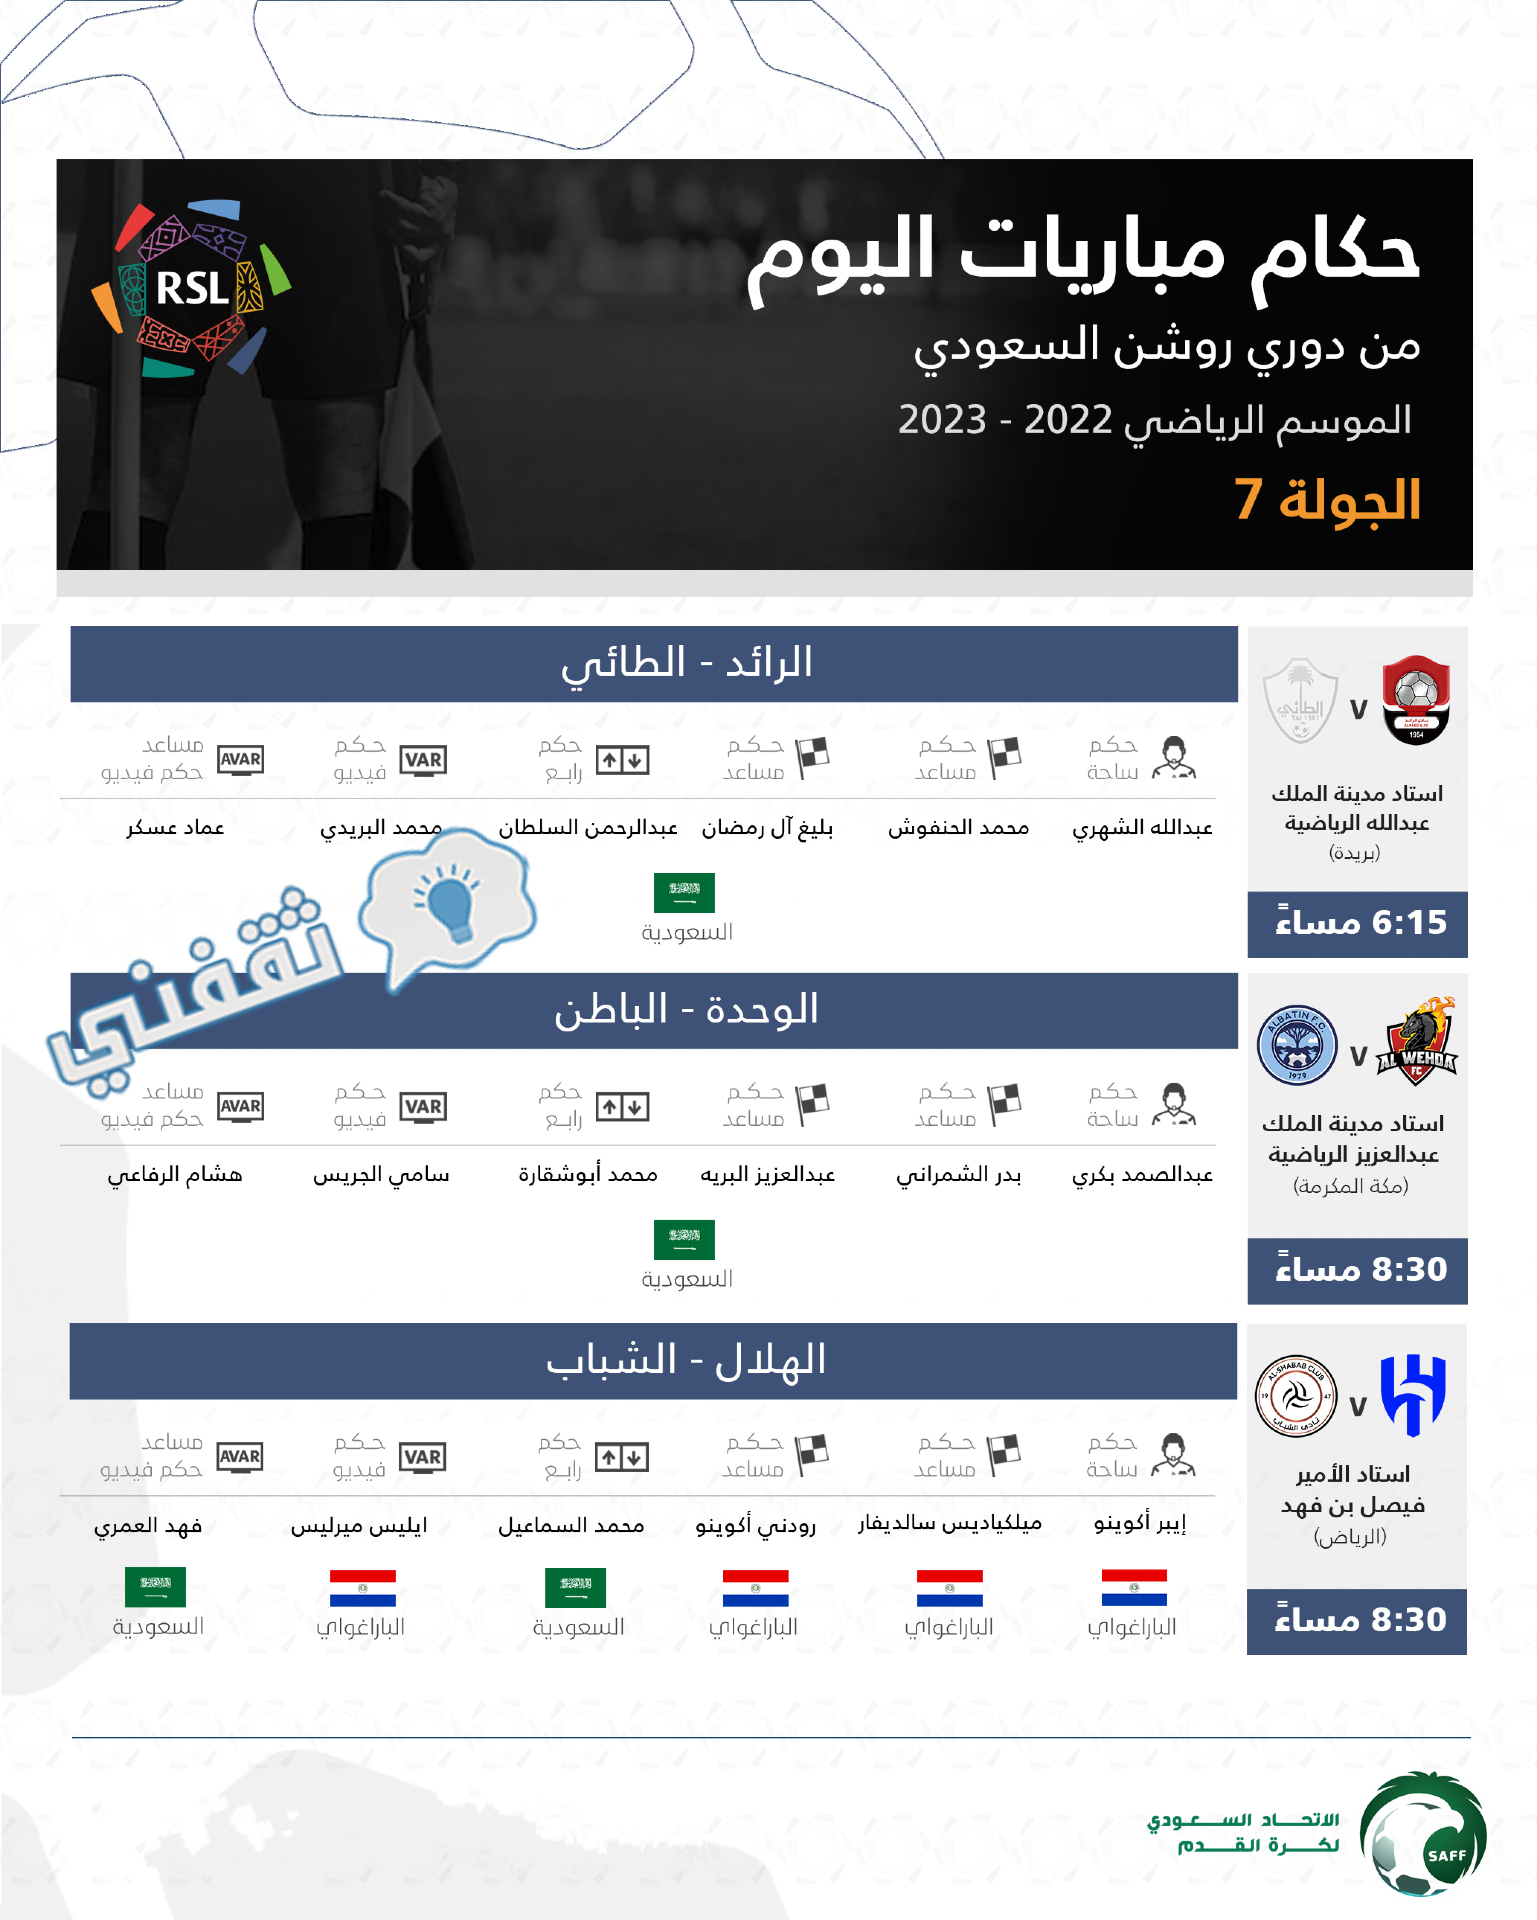 طاقم تحكيم مباريات اليوم الأول (الاثنين) من الجولة السابعة في الدوري السعودي للمحترفين 2022_2023